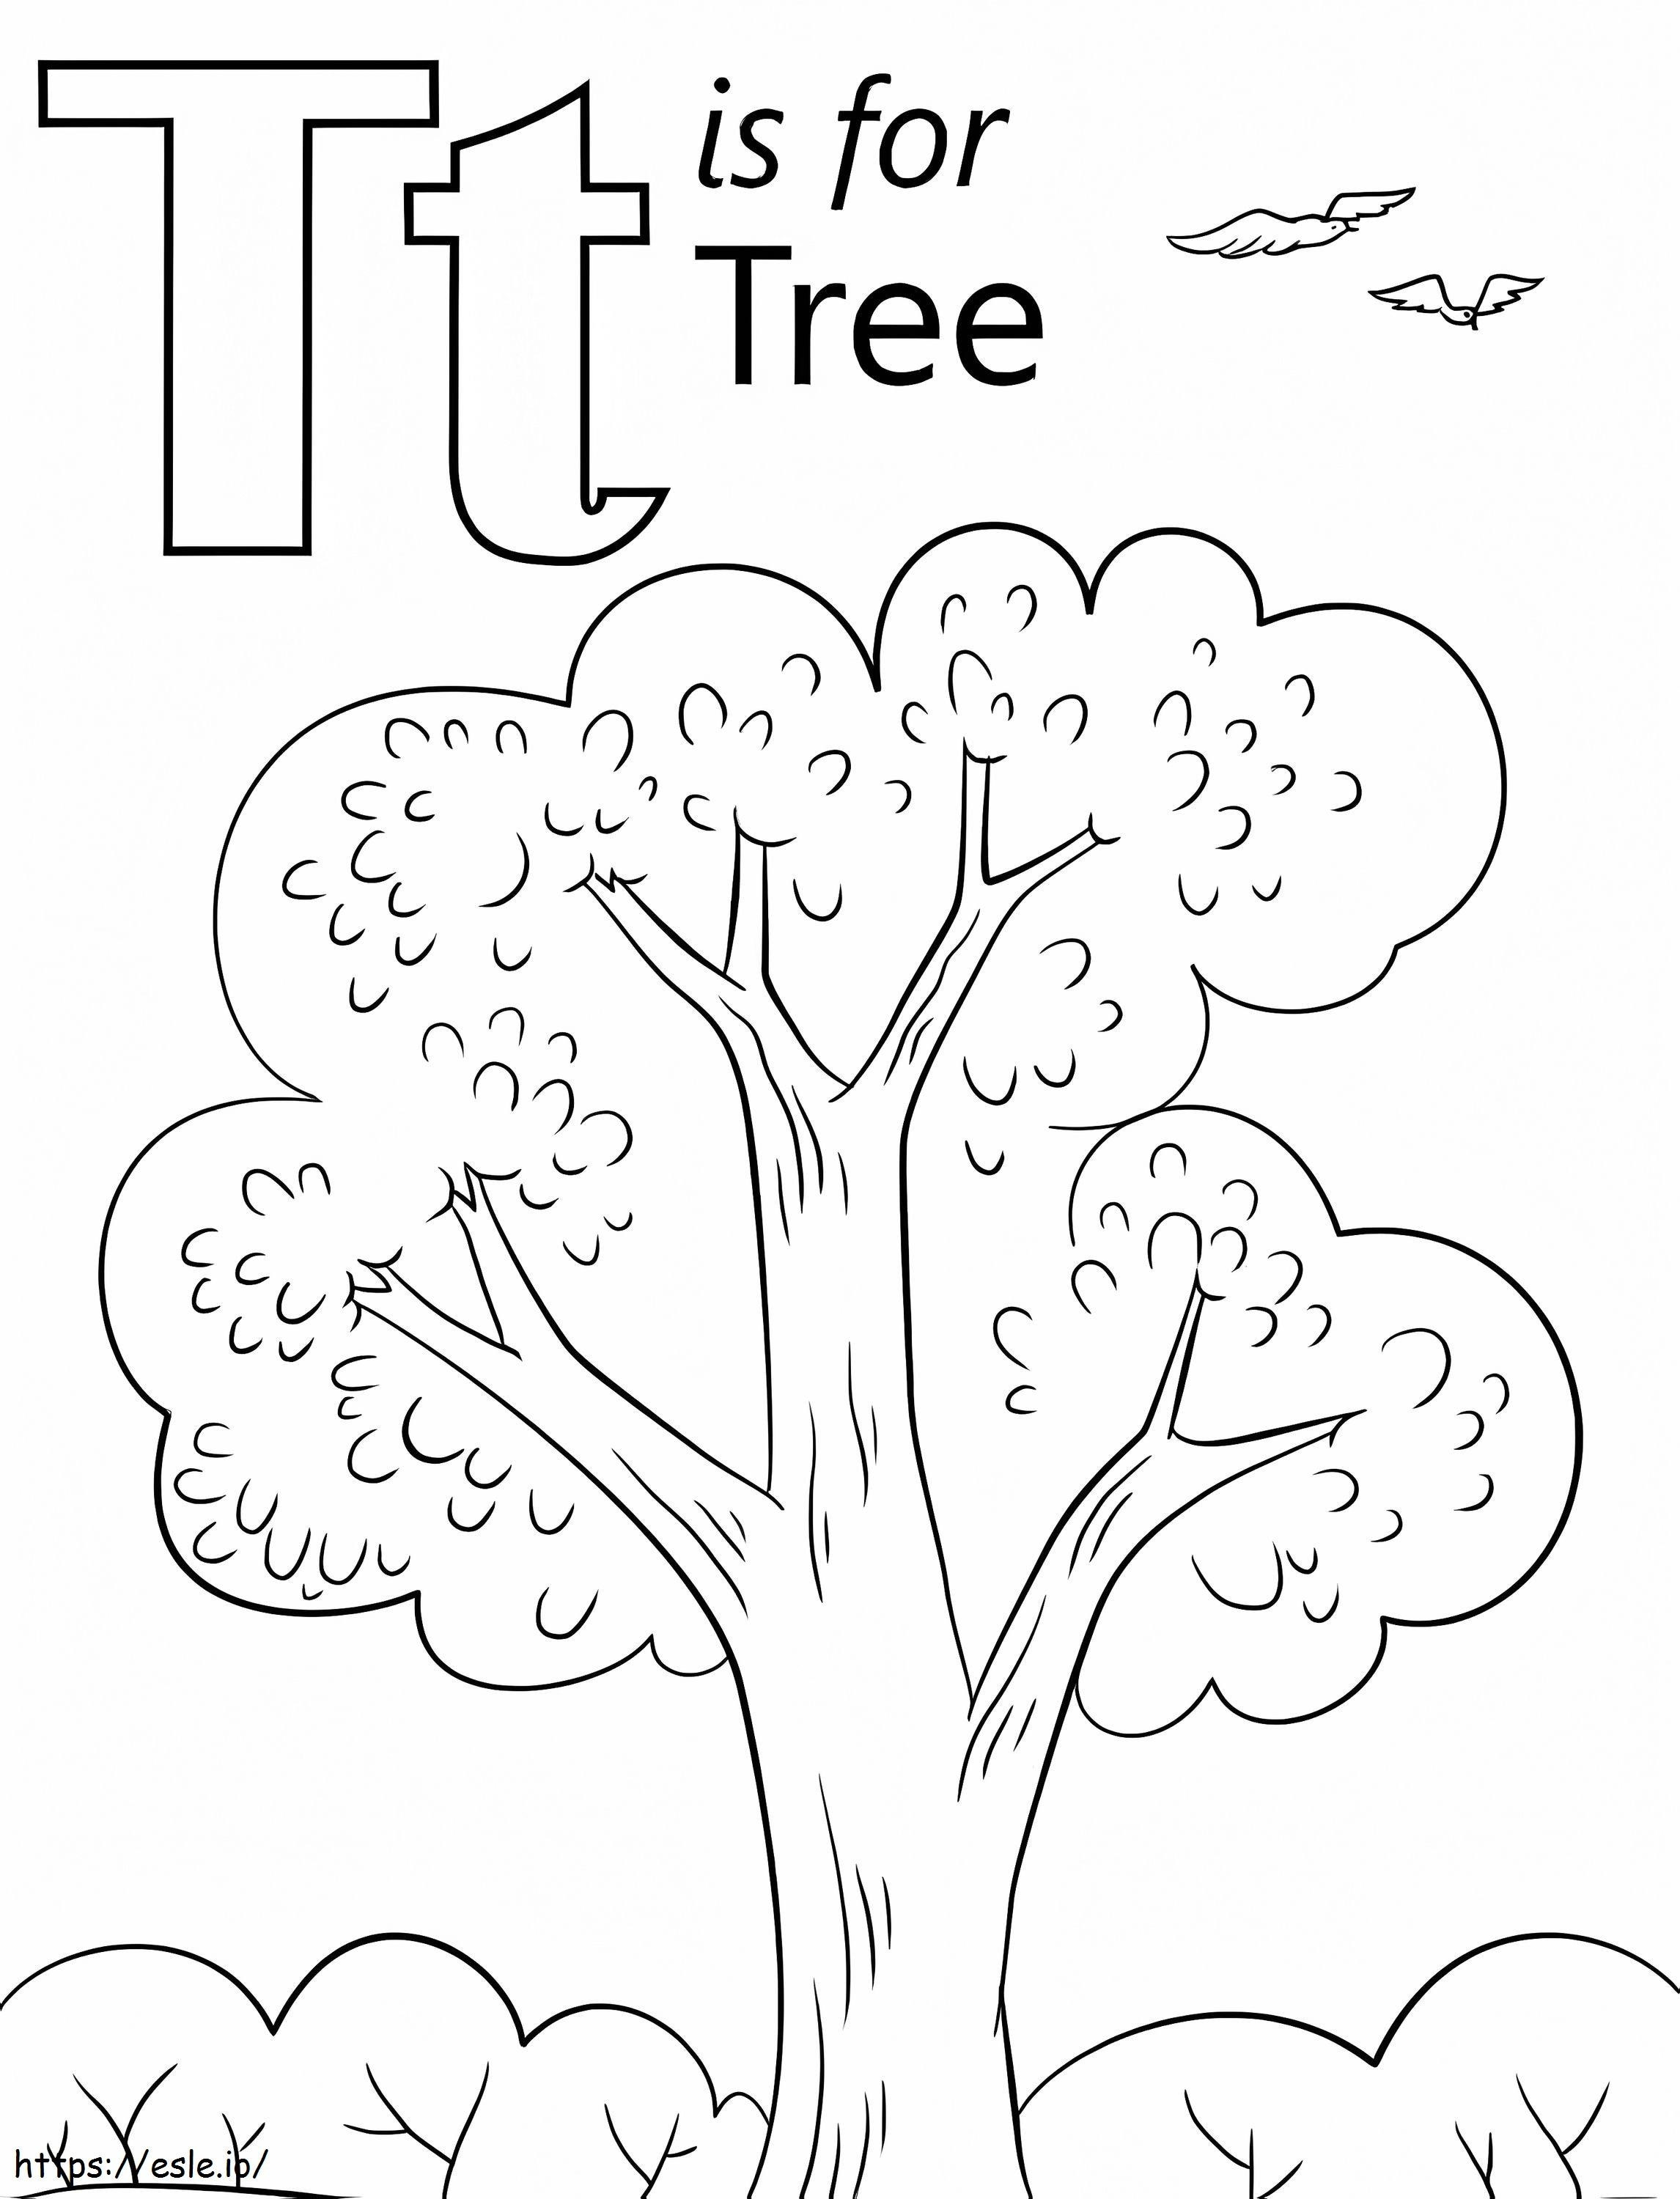 Lettera T E Nuvola Dell'albero da colorare